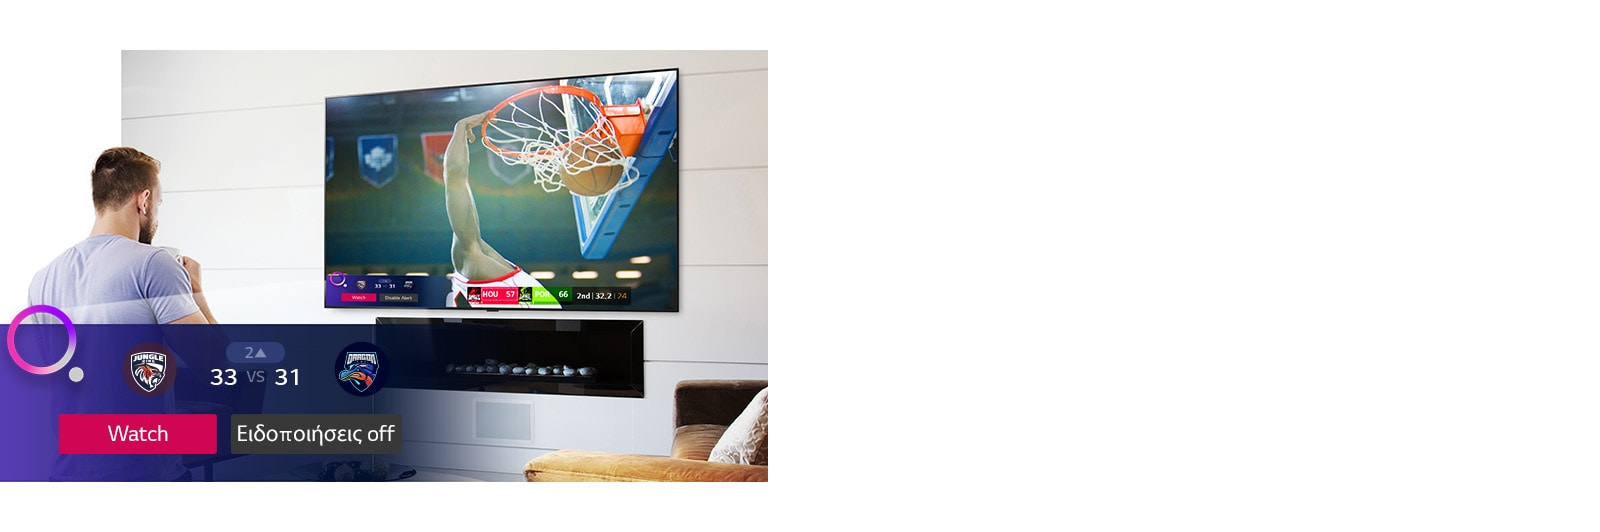 Οθόνη τηλεόρασης που δείχνει μια σκηνή από έναν αγώνα μπάσκετ με αθλητική ειδοποίηση